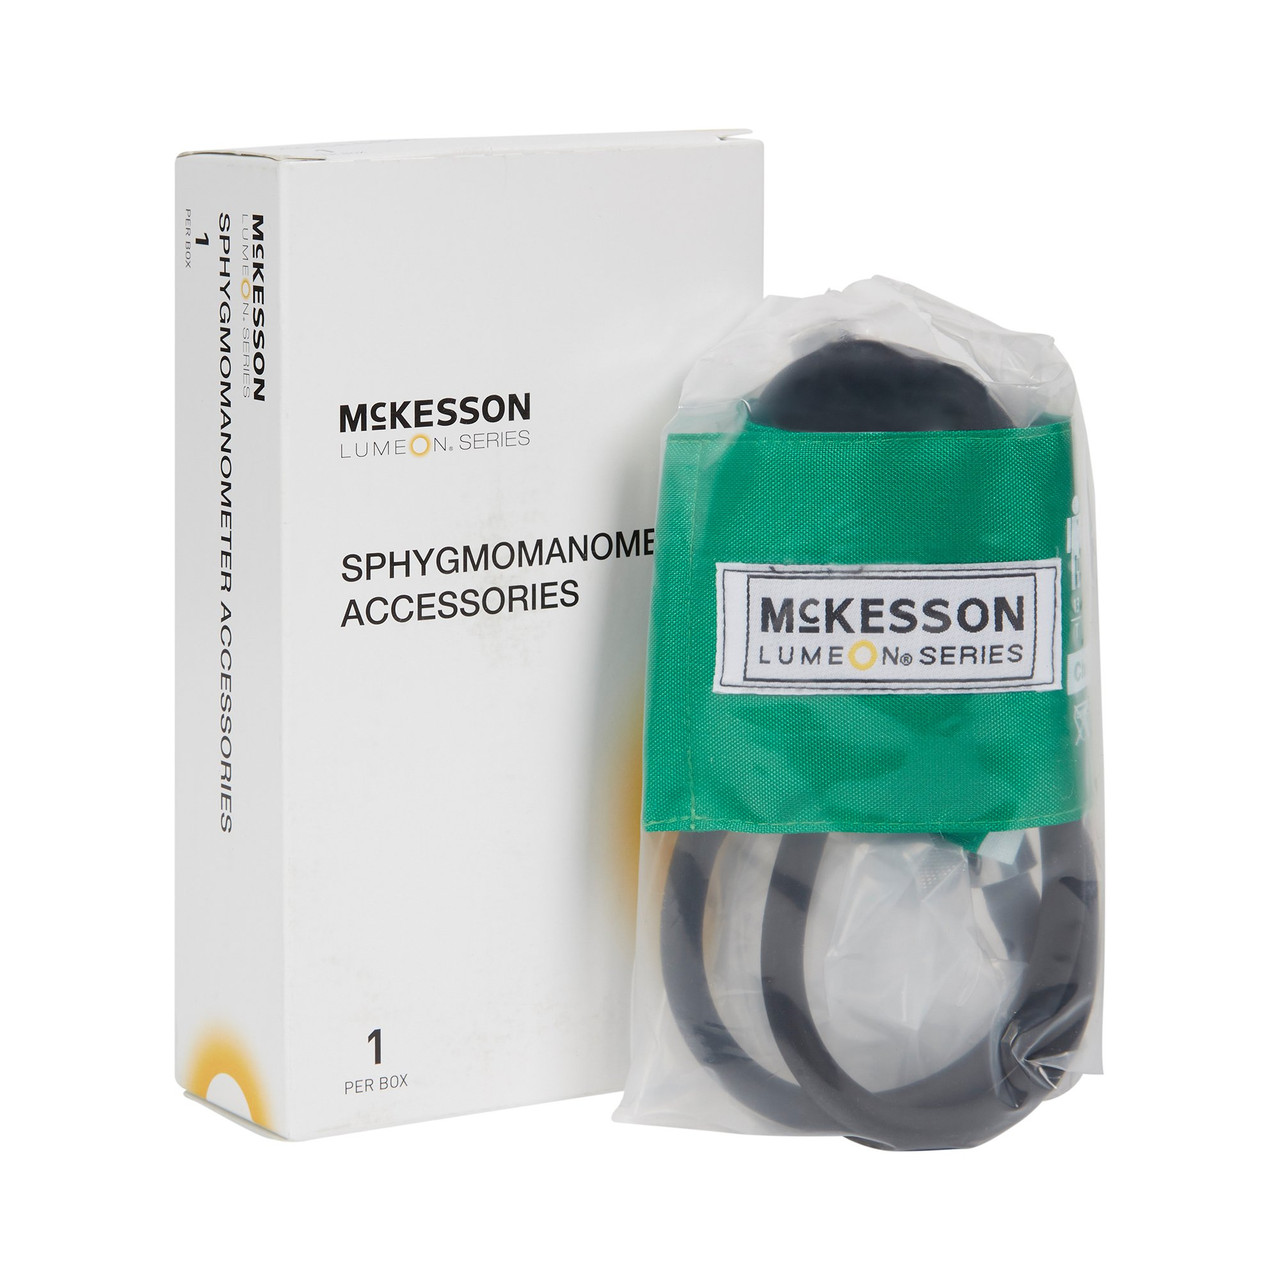 McKesson LUMEON Blood Pressure Cuff and Bulb, Nylon Cuff, Large